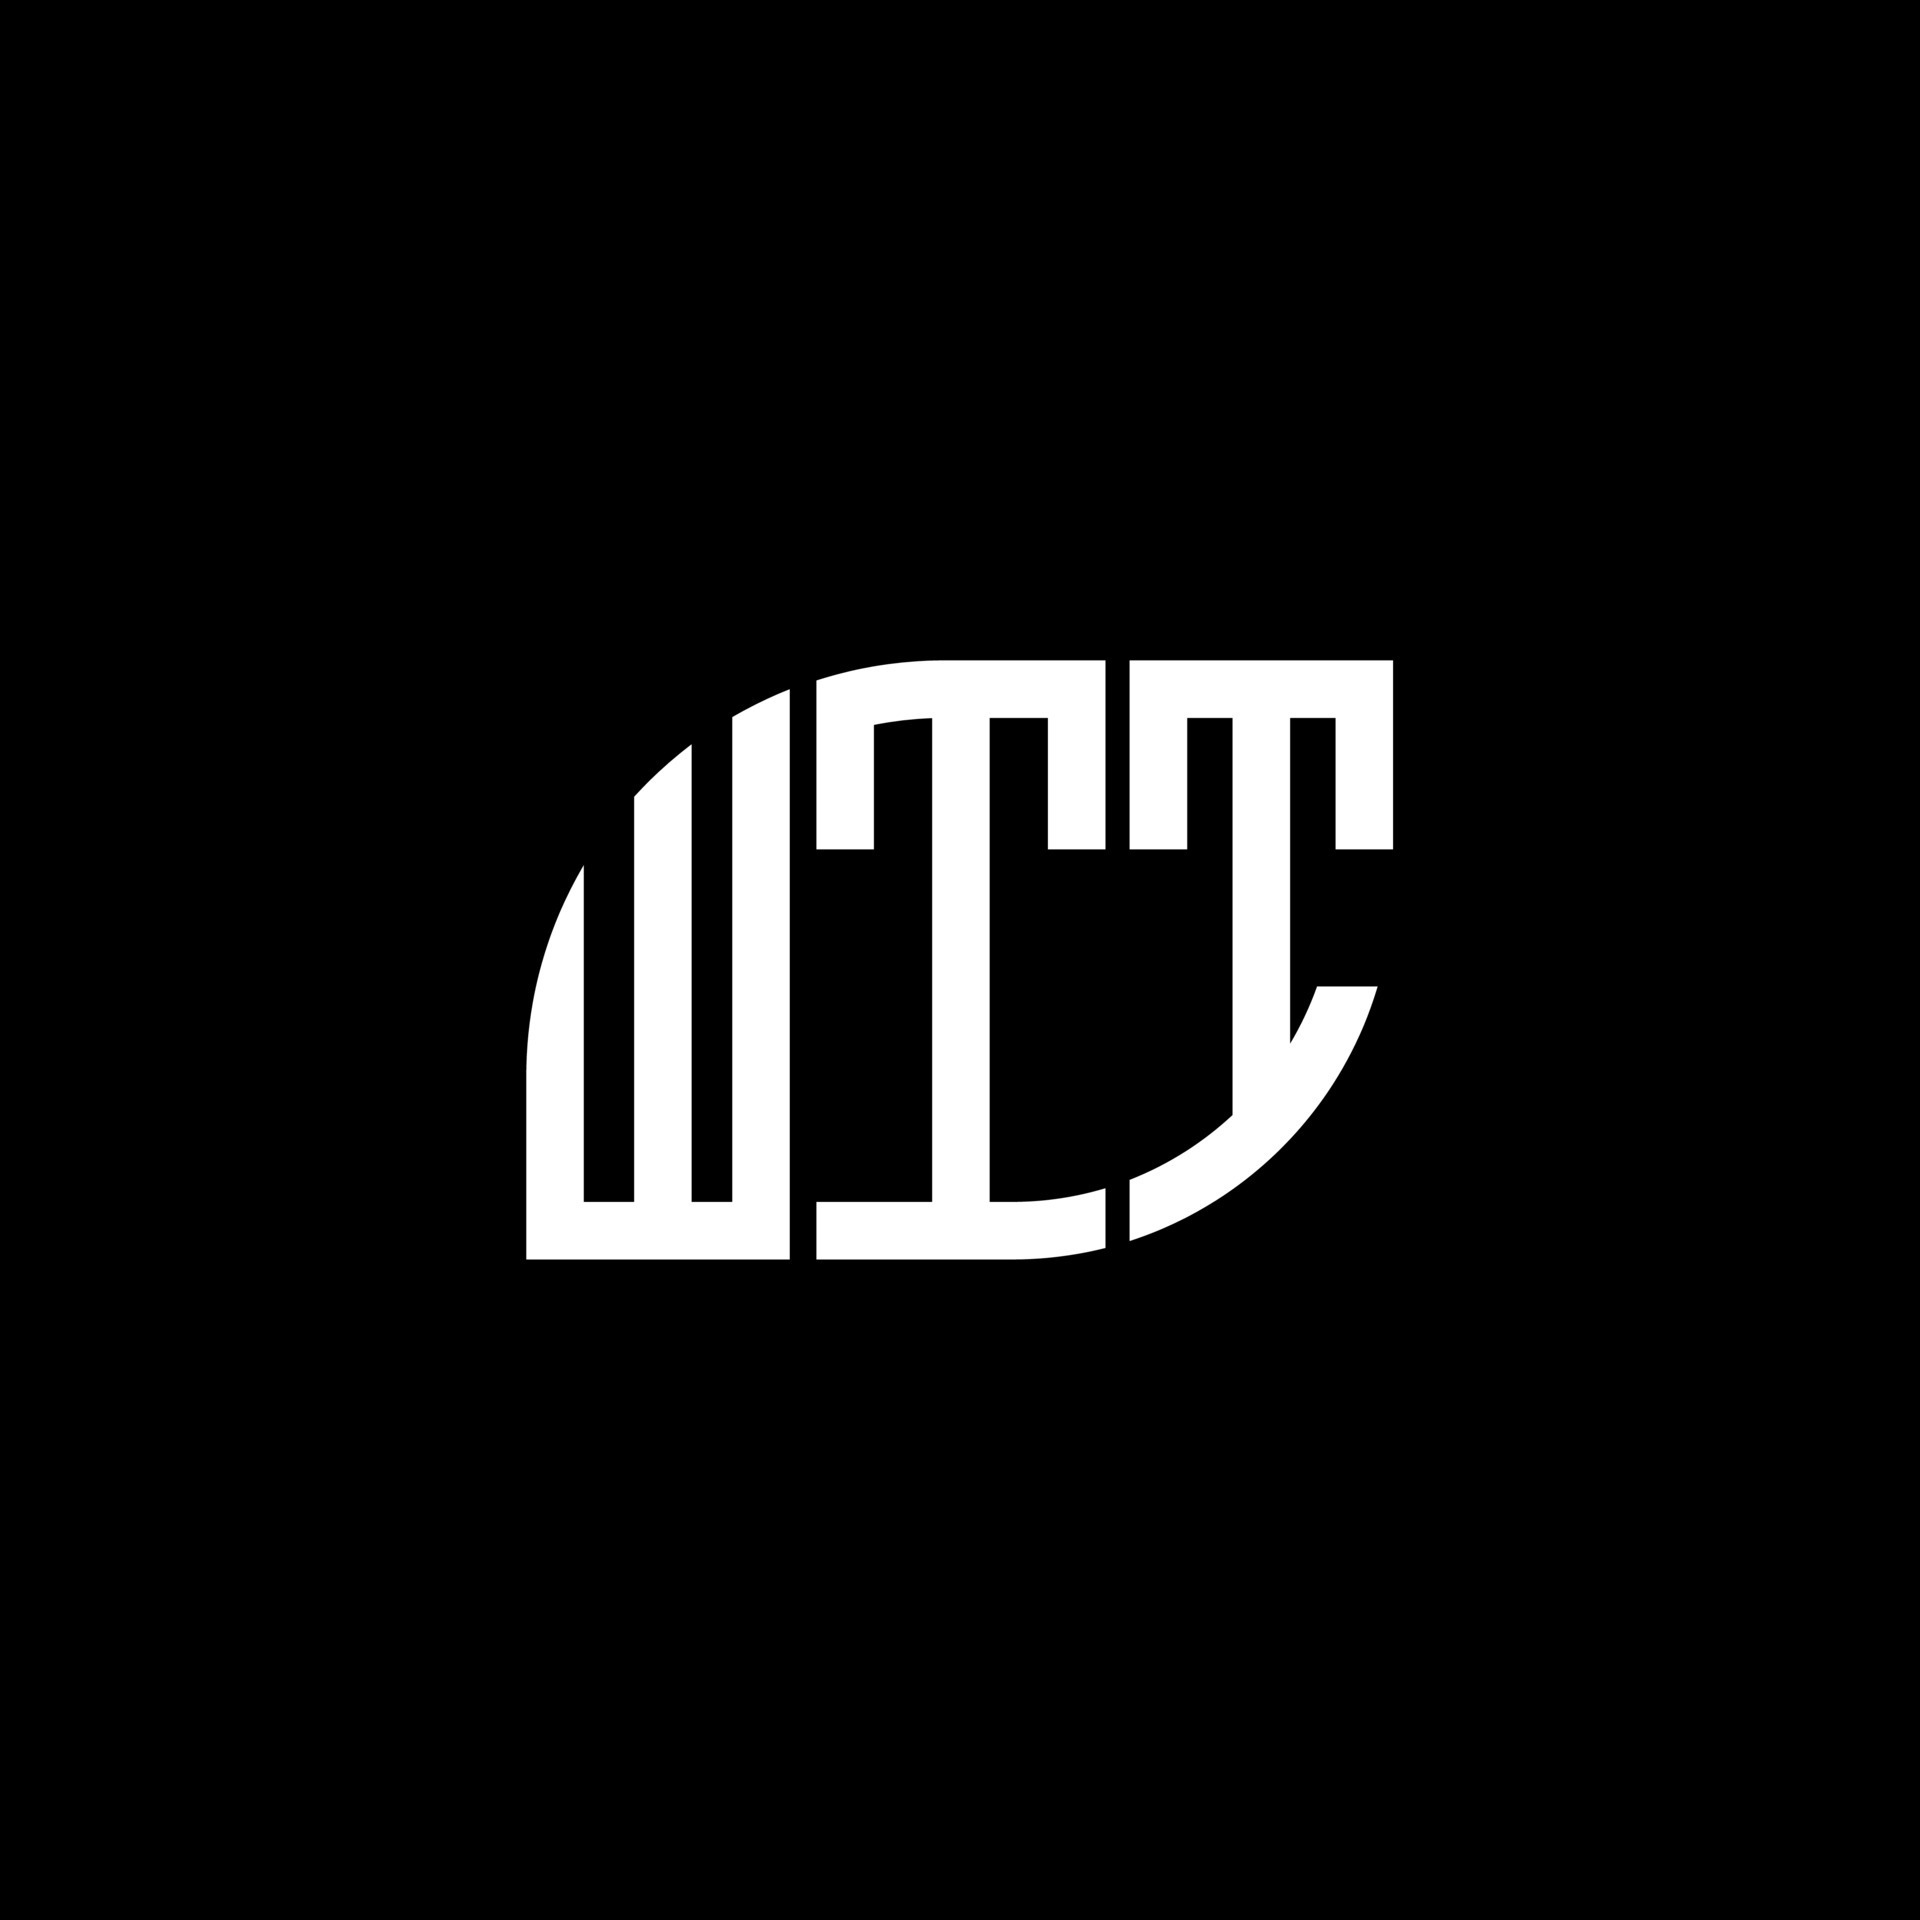 WTT letter logo design on black background. WTT creative initials ...